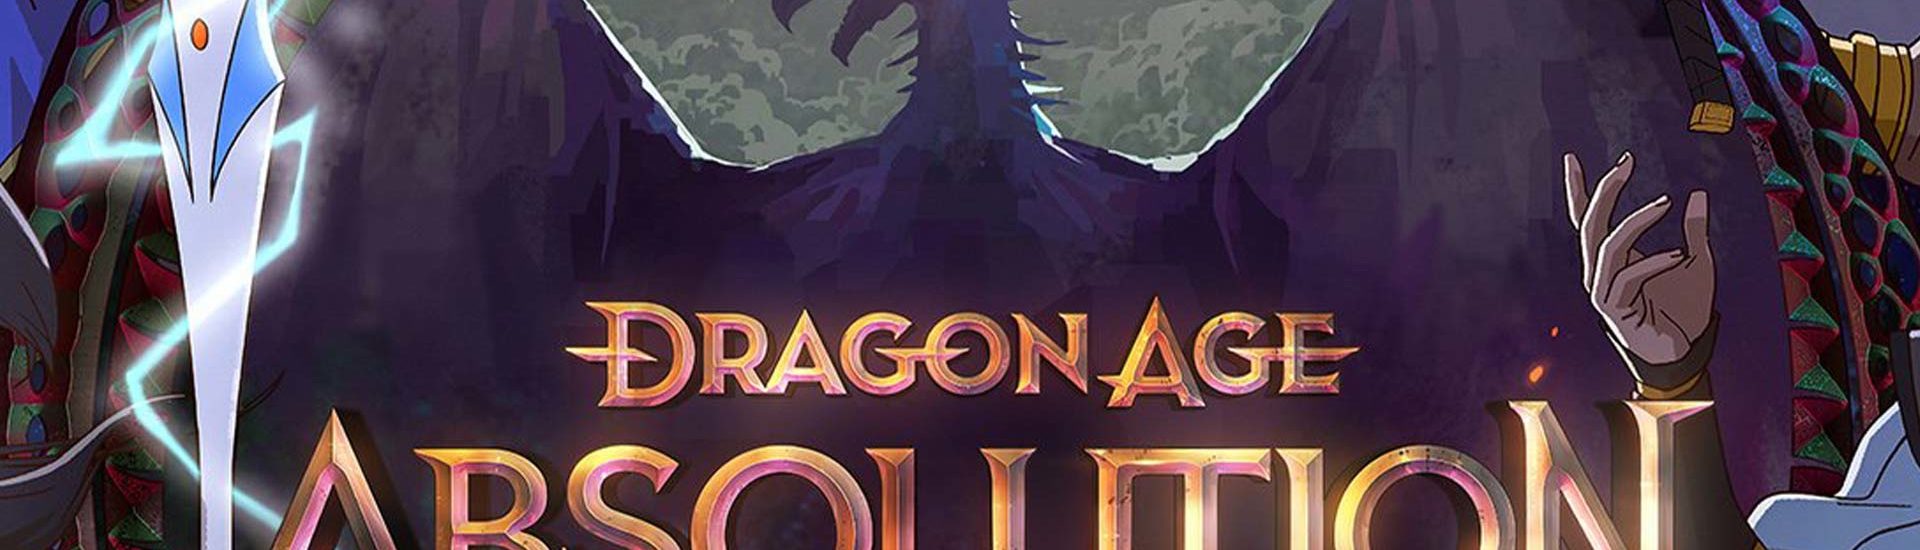 Erster Trailer zur Serie Dragon Age Absolution